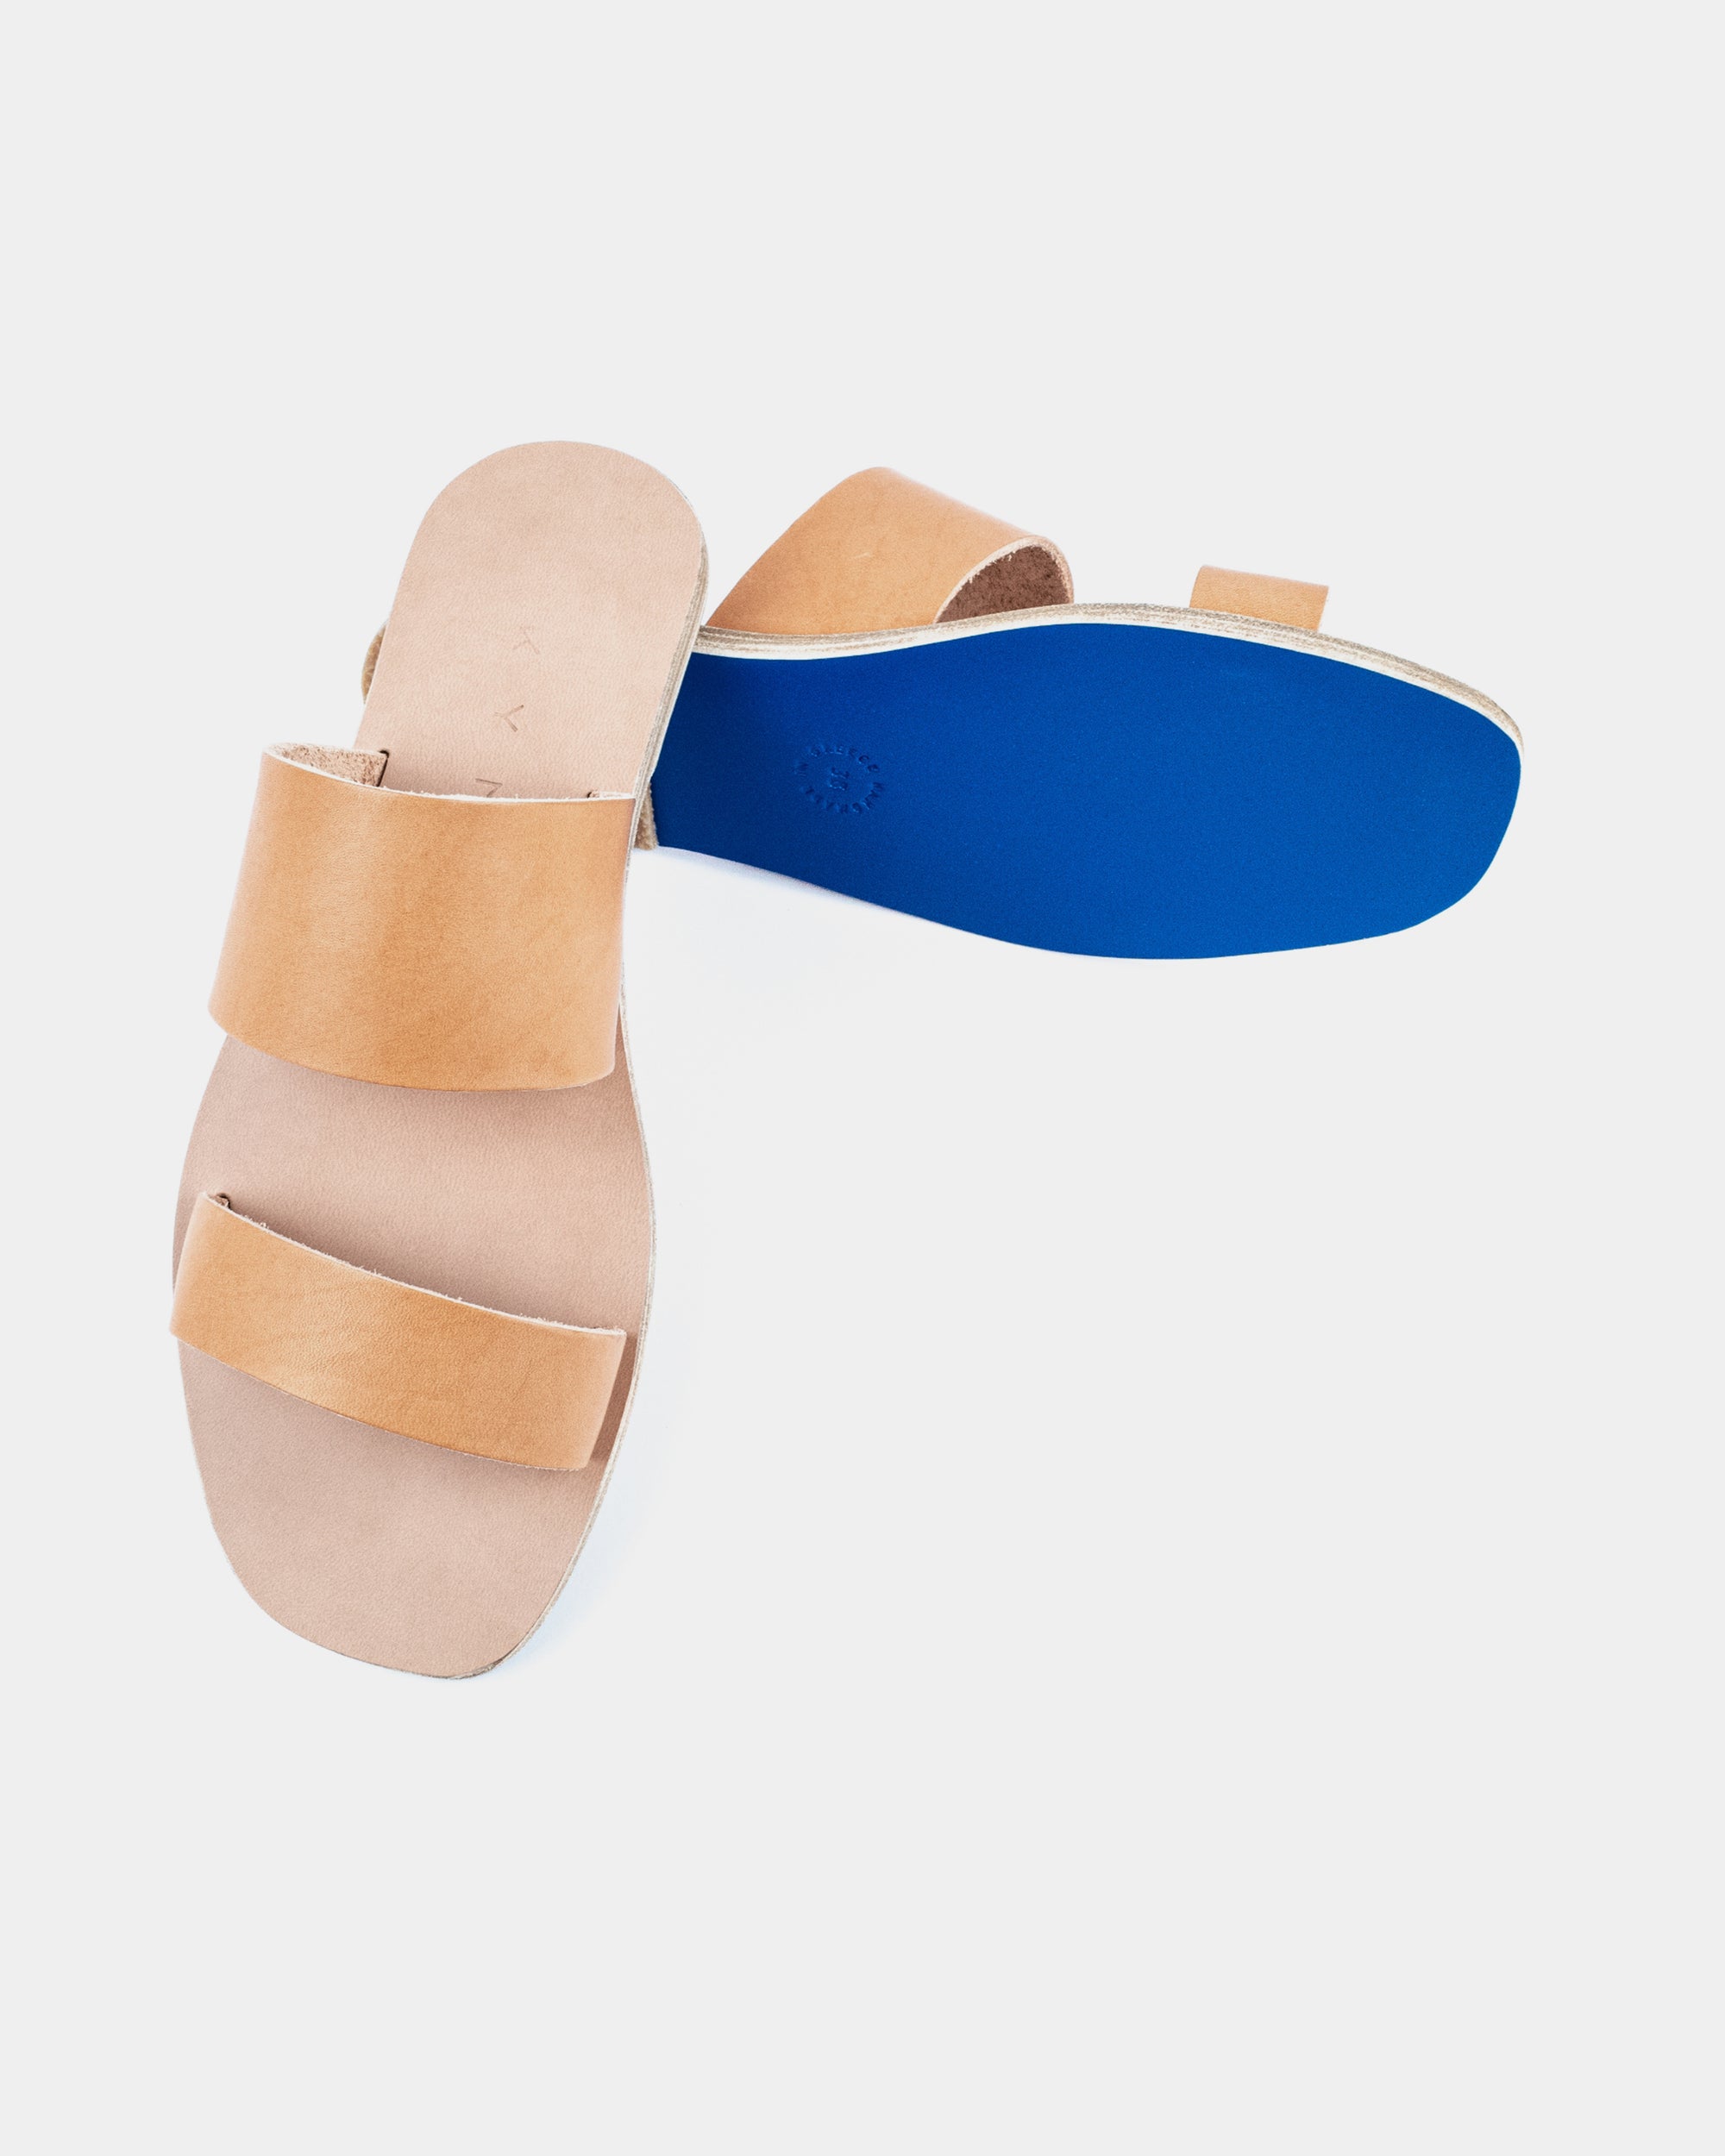 Blue Suede Double Strap Sandals